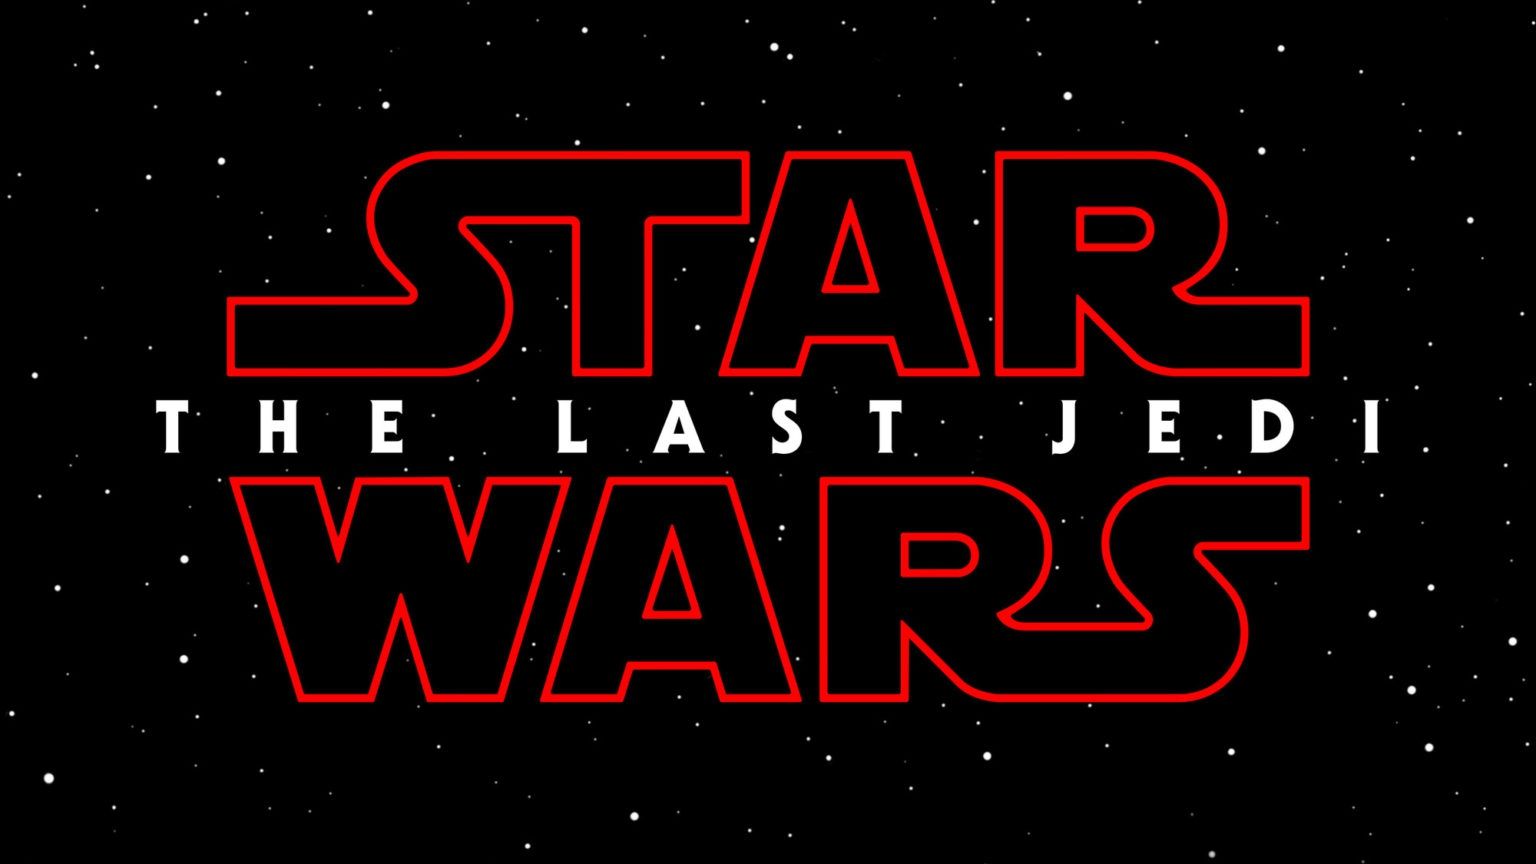 Star Wars 8: Leaked trailer description reveals Luke Skywalker and Snoke scenes in Last Jedi